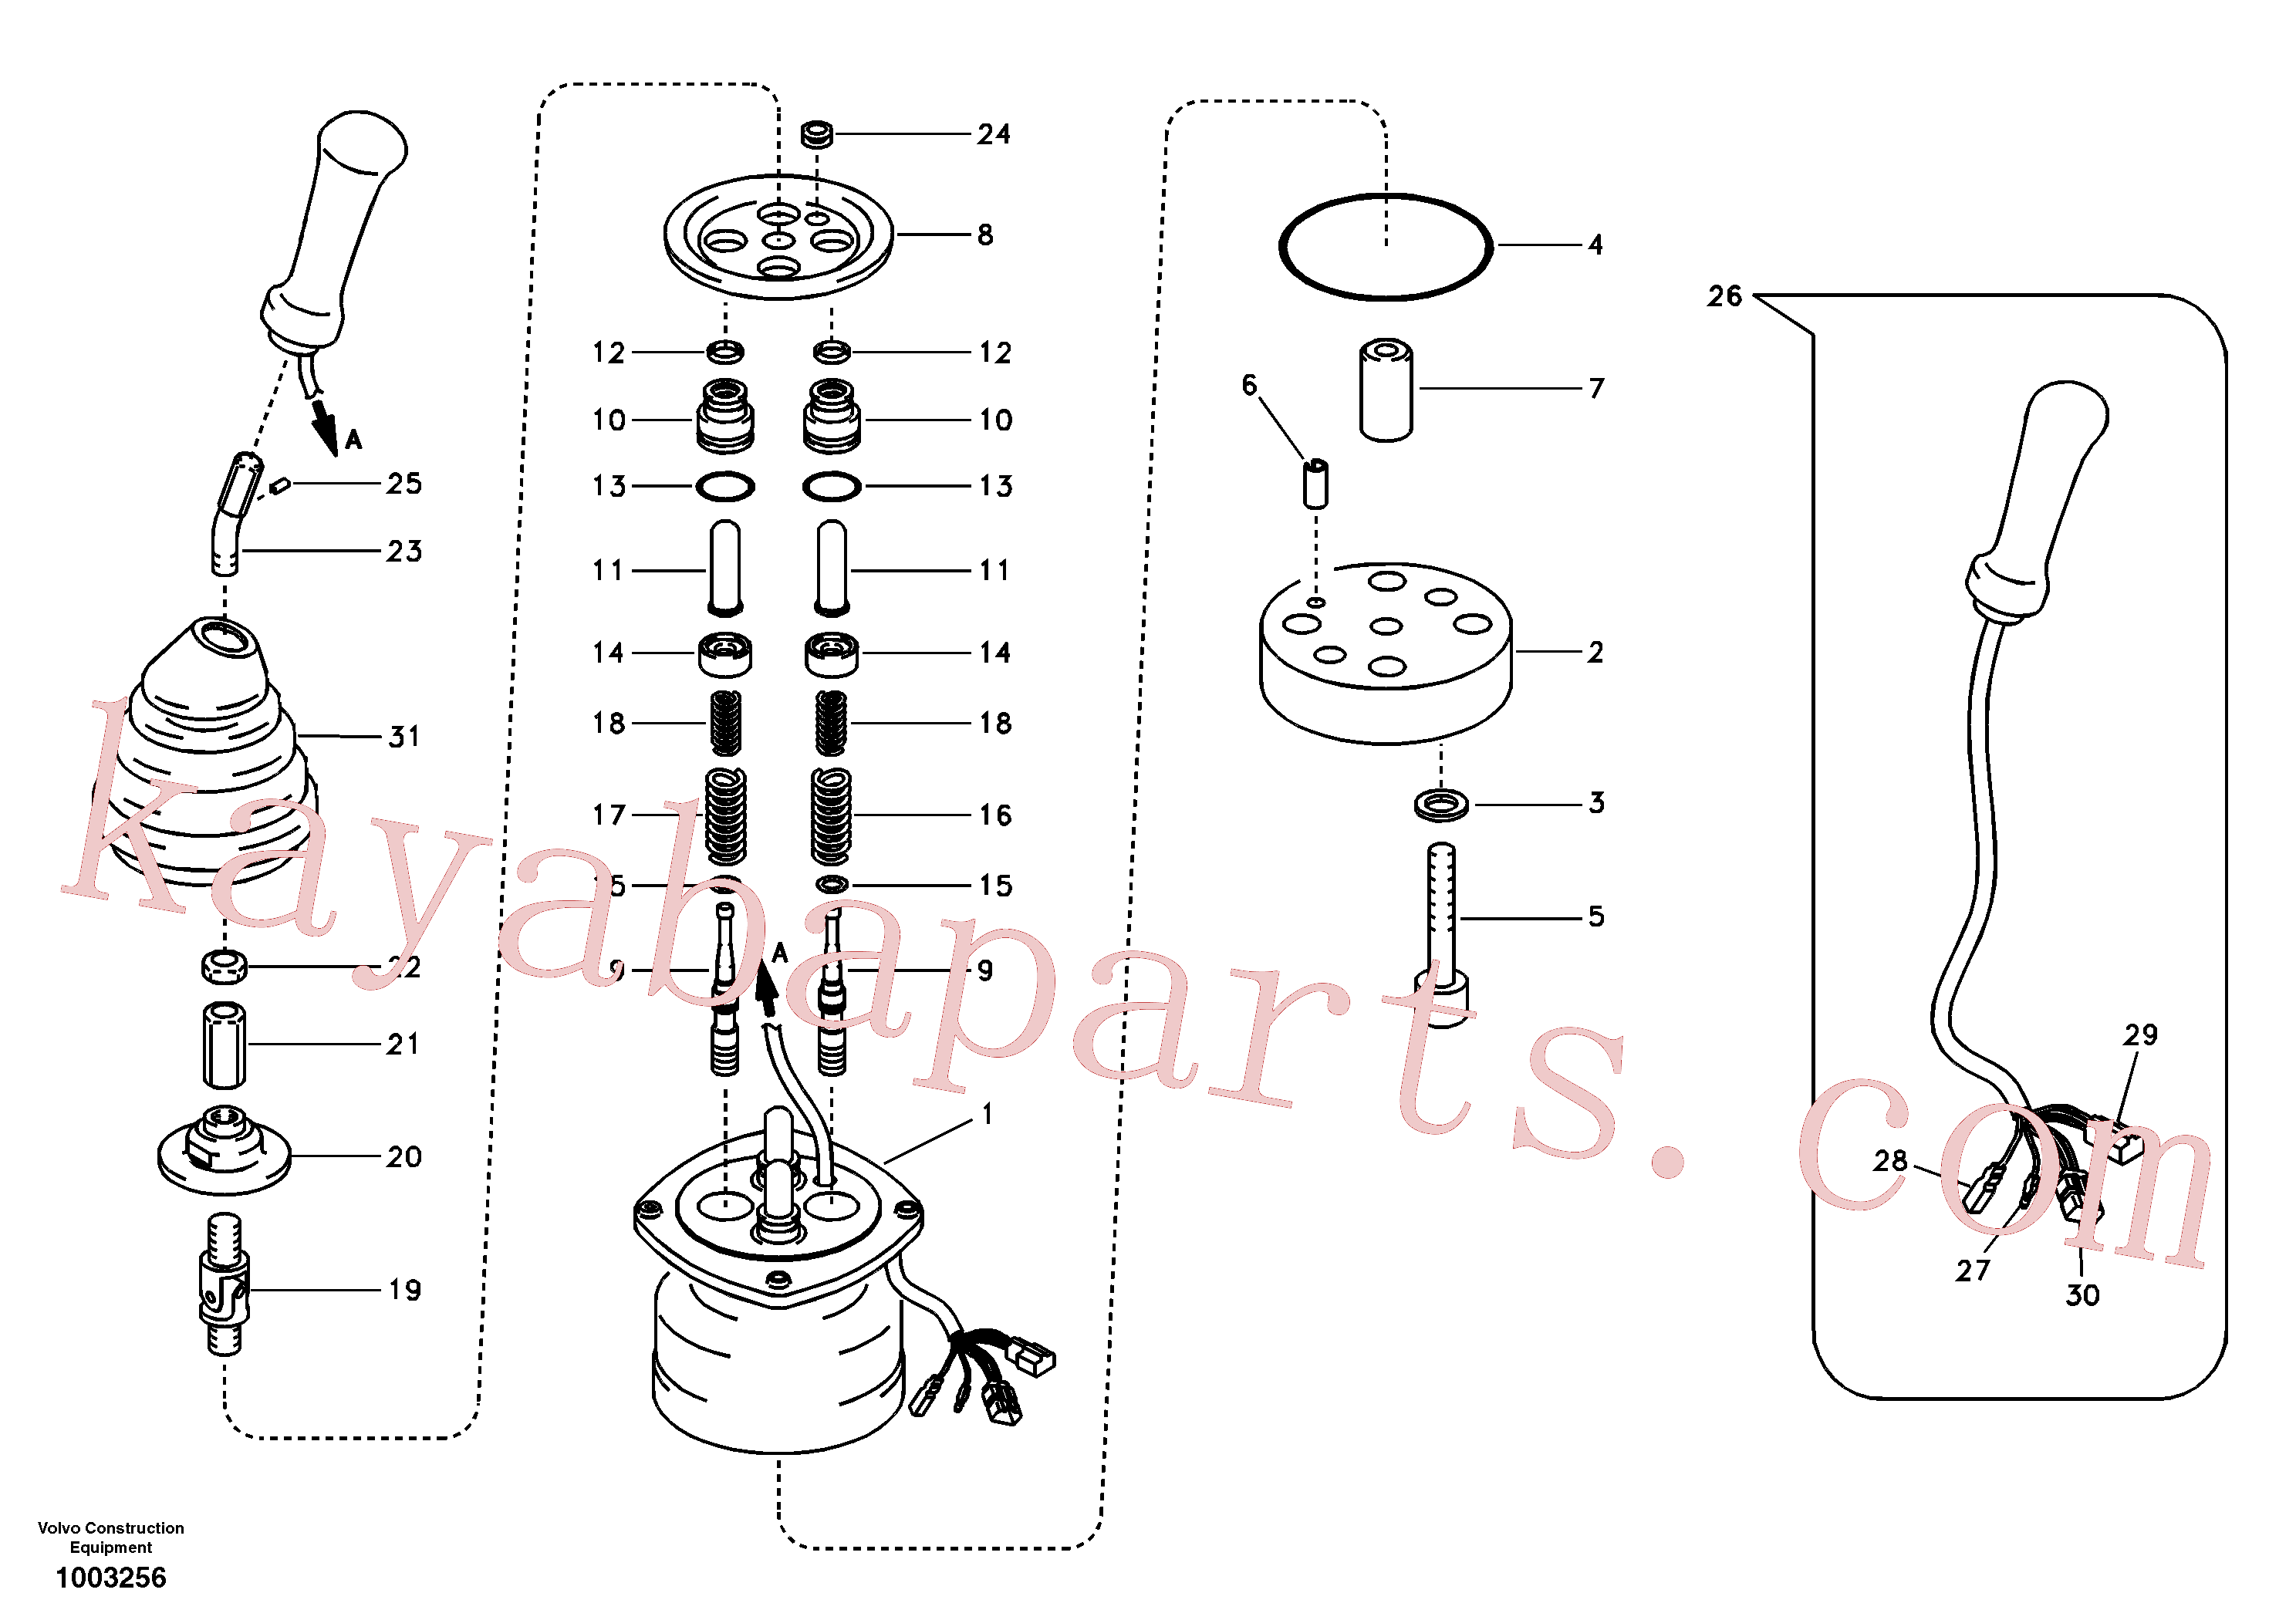 SA1148-02160 for Volvo Servo system, remote control valve(1003256 assembly)